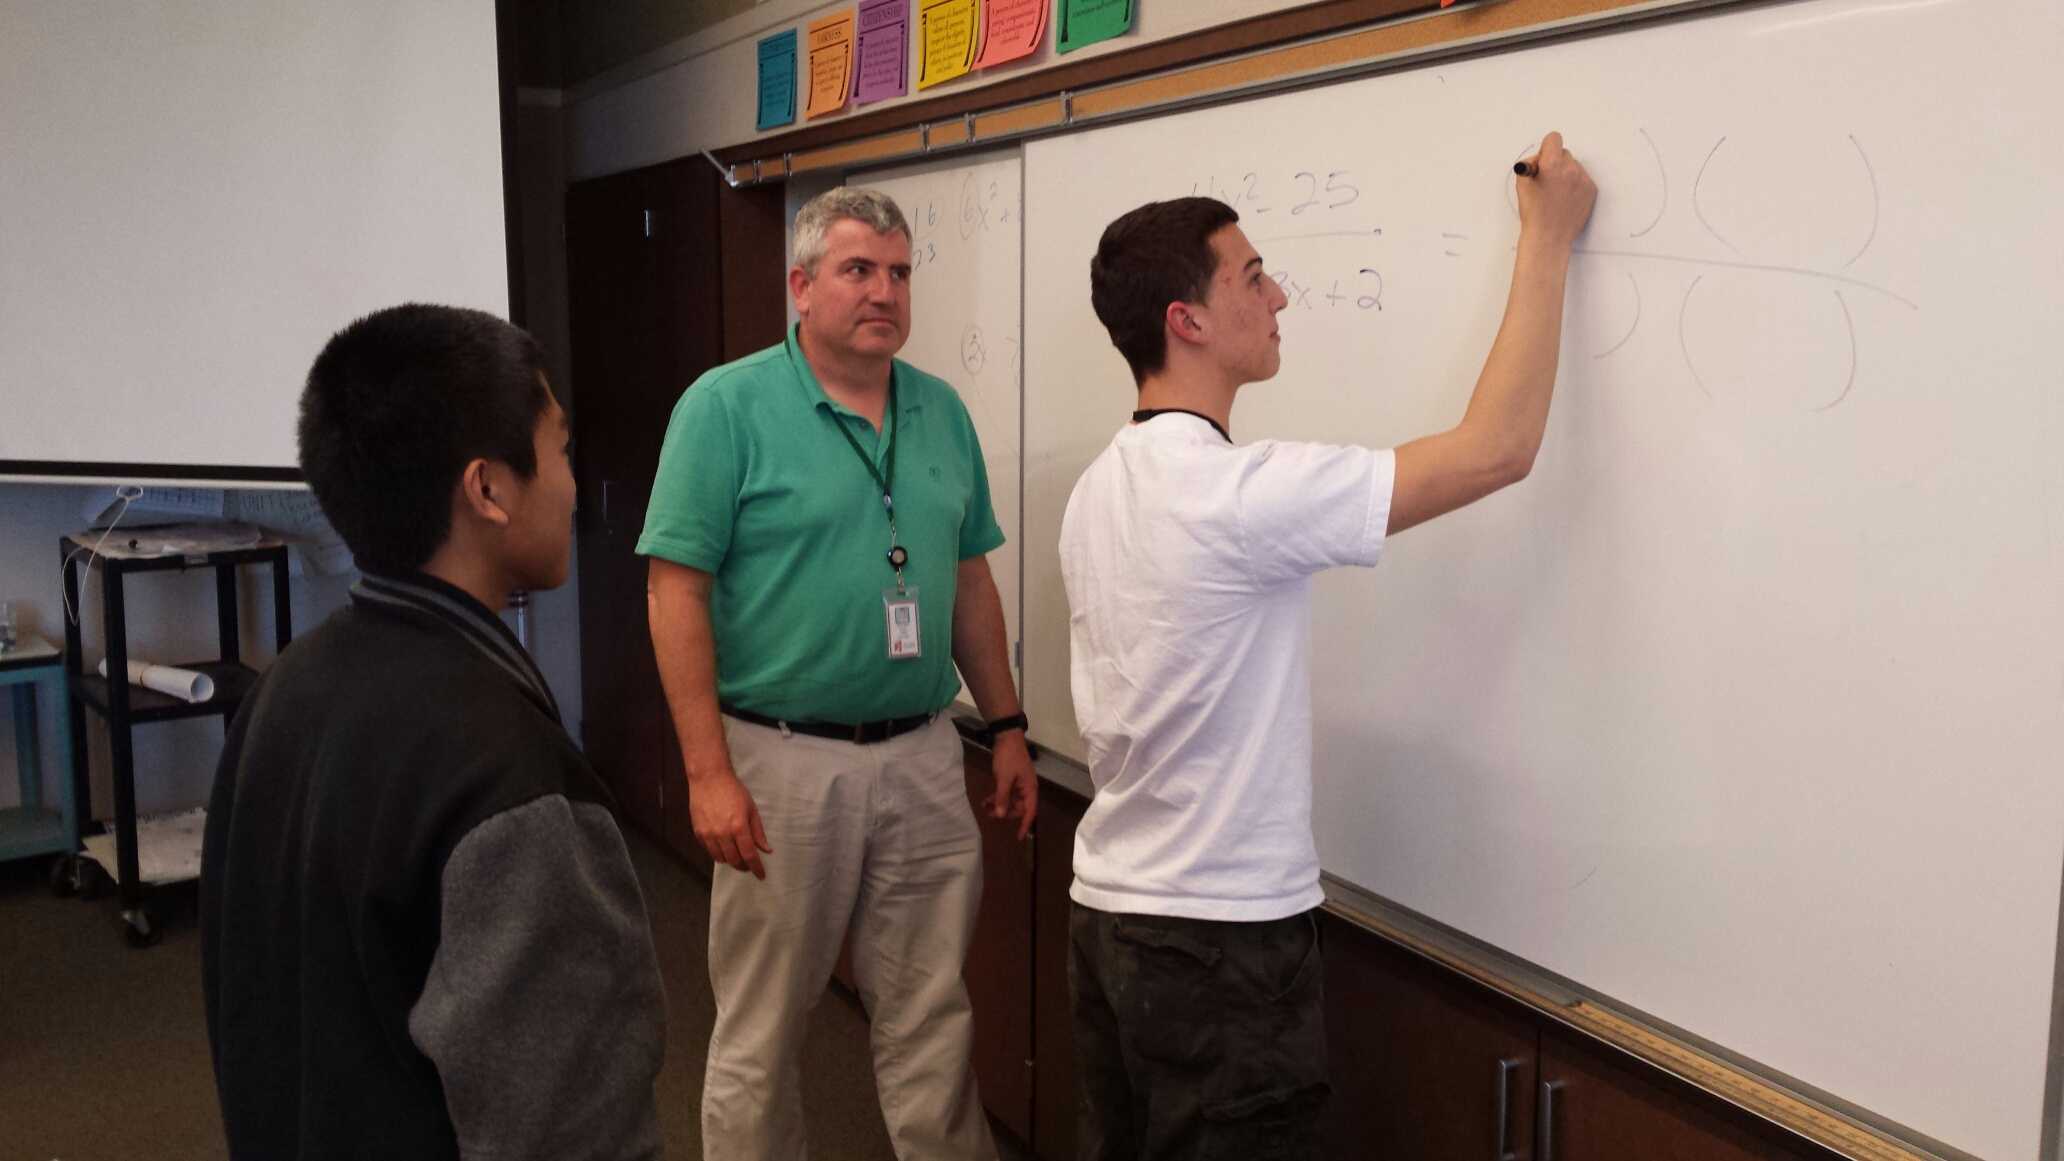 Math teacher David Daily assists a student with a math problem.